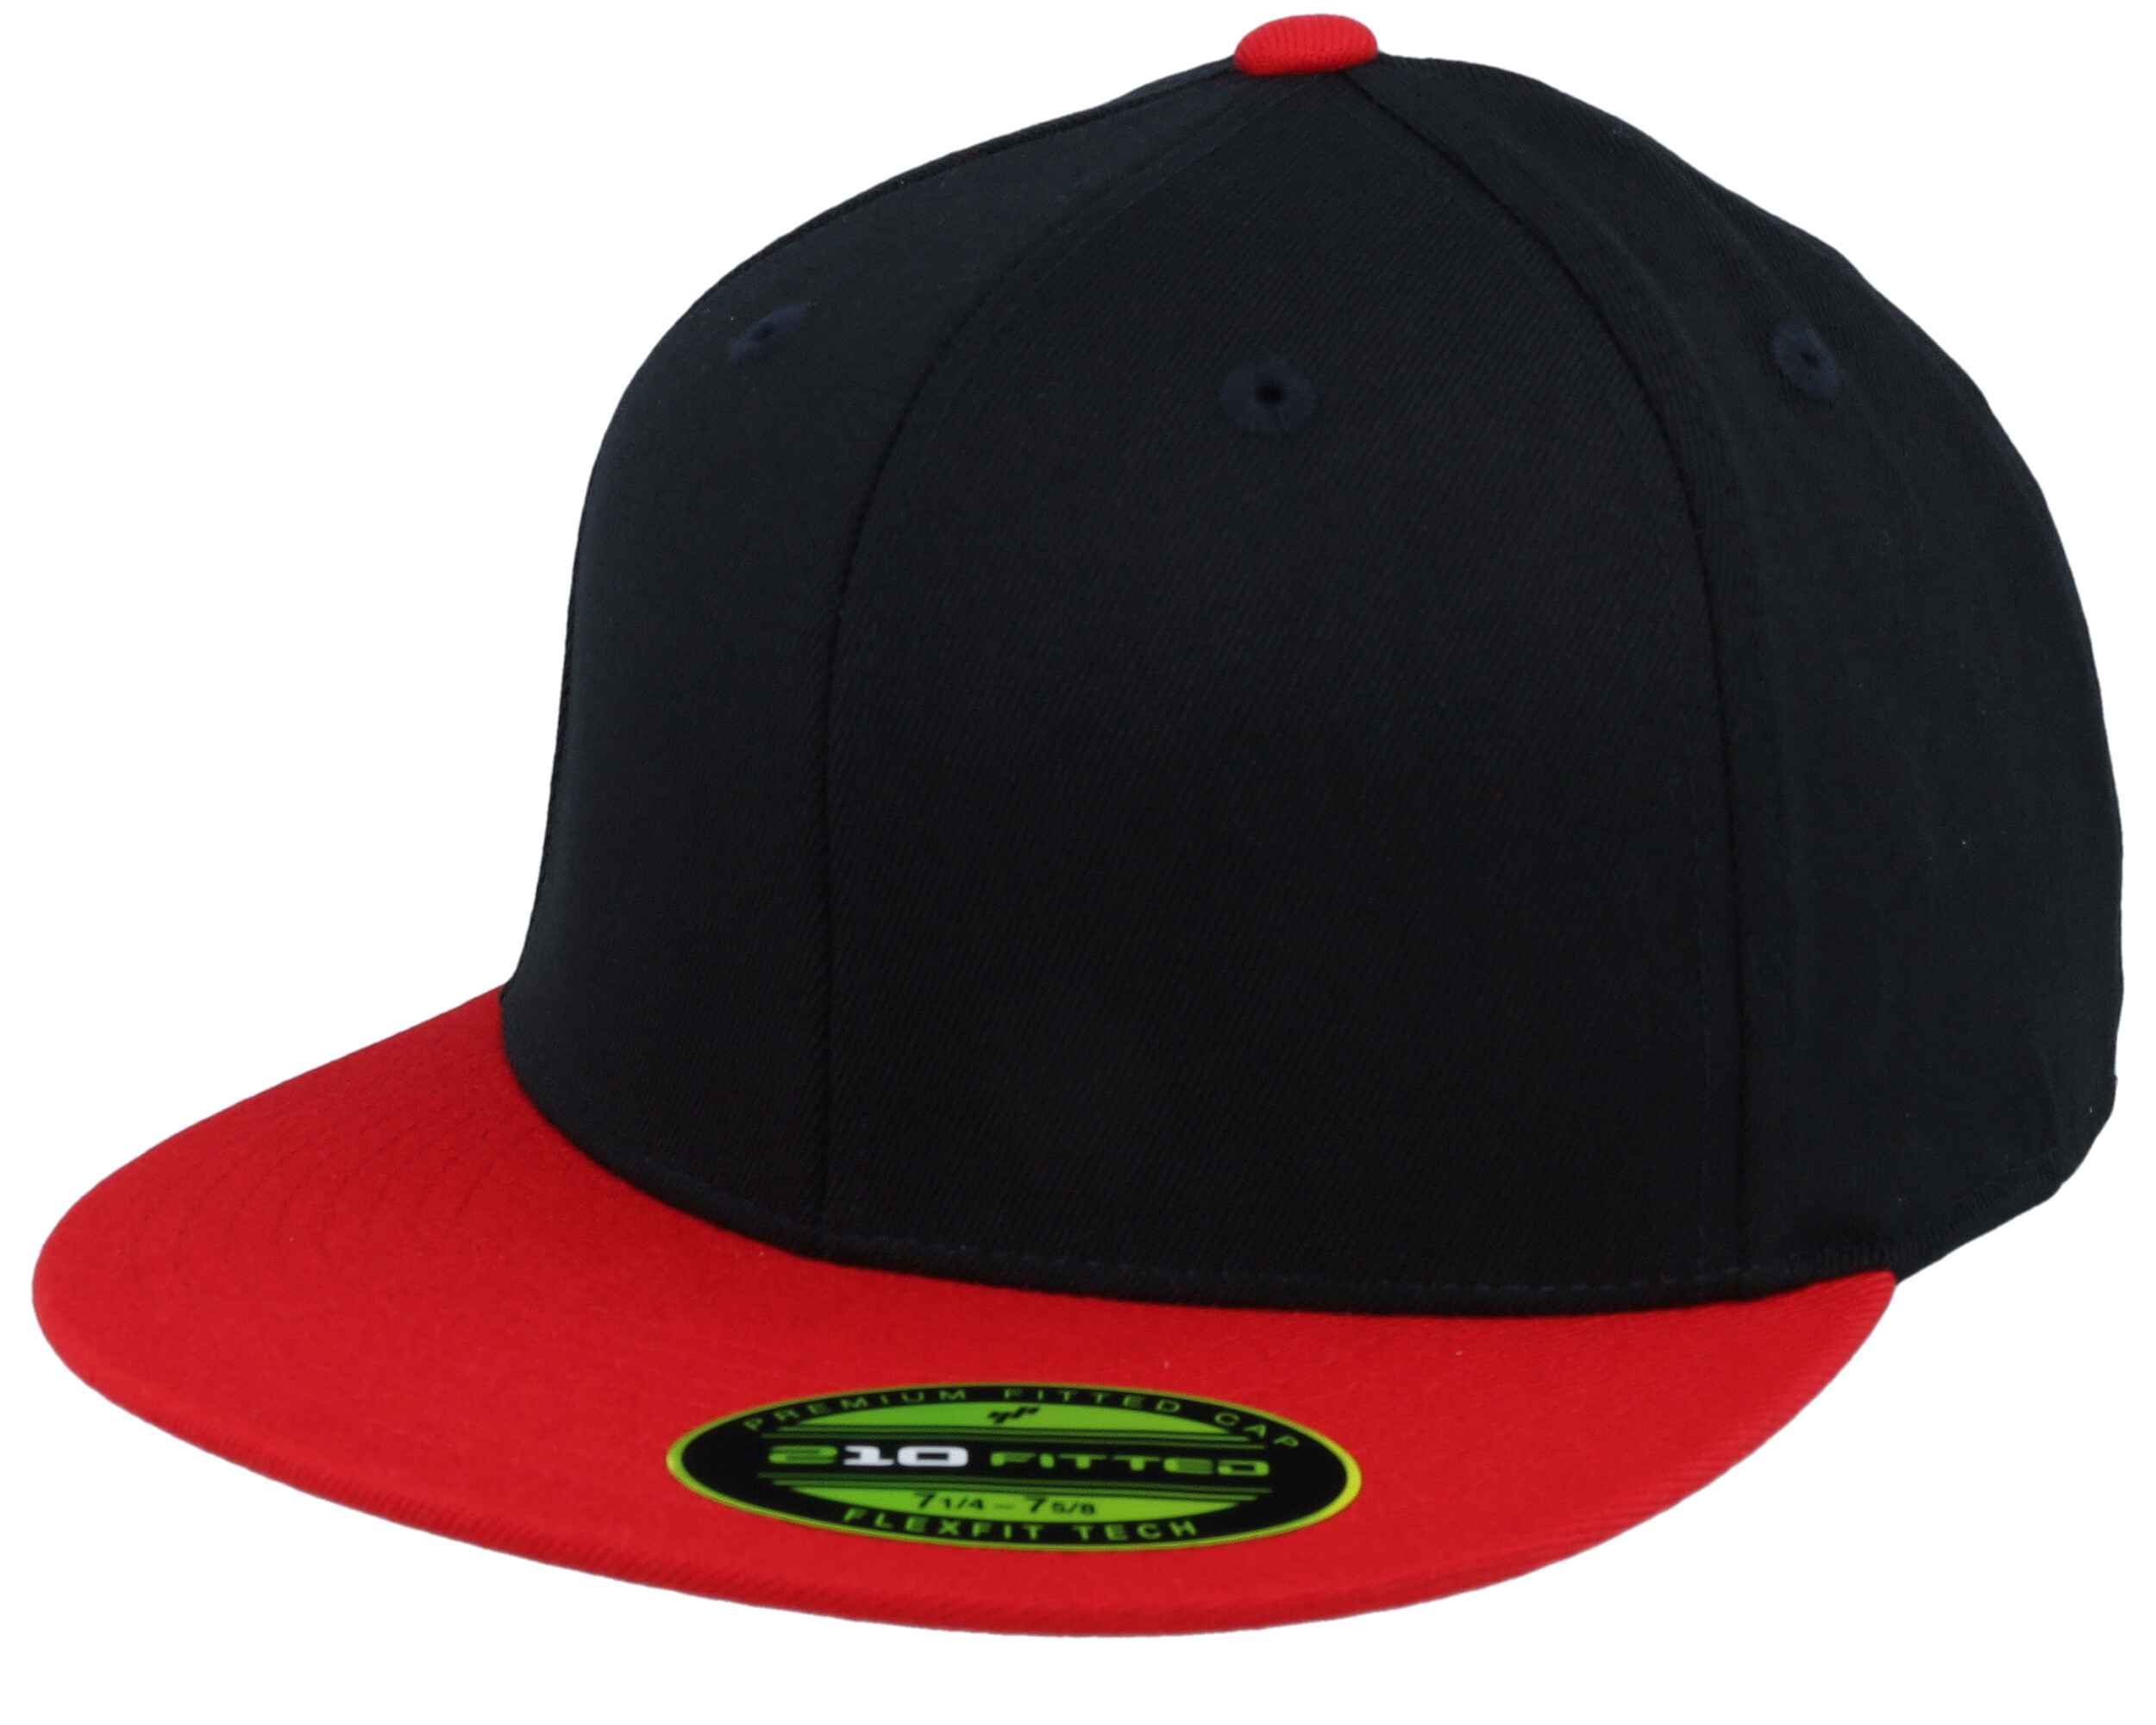 Premium 210 2-Tone Fitted cap - Flexfit Black/Red